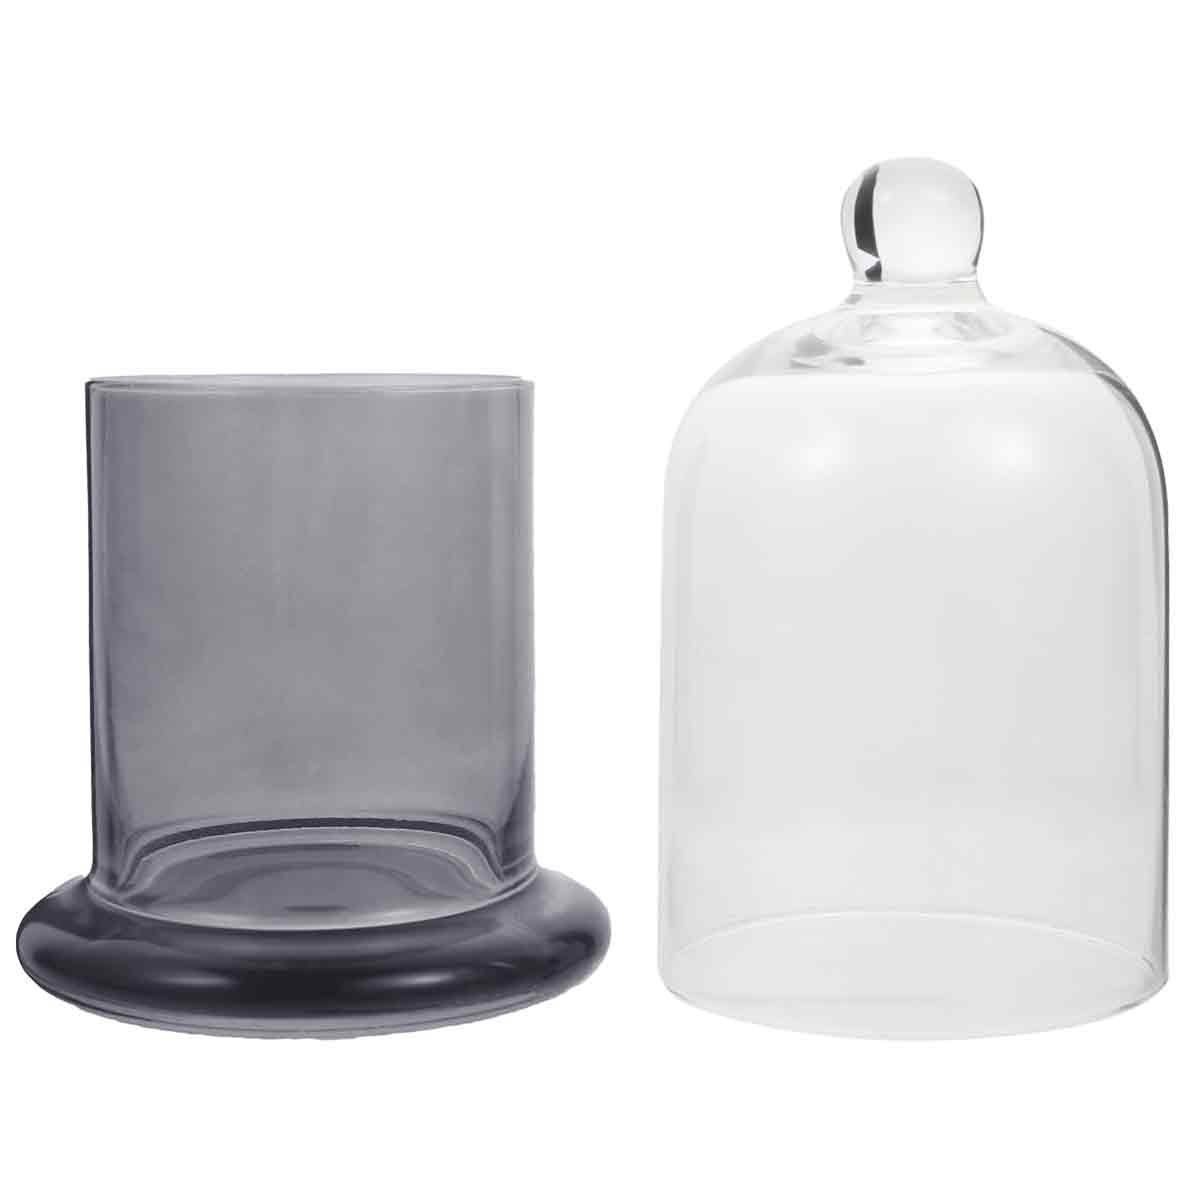 Jormftte Teelichthalter Glasglocke,Glashaube für Lichterketten, Tafelschmuck,Antiquitäten